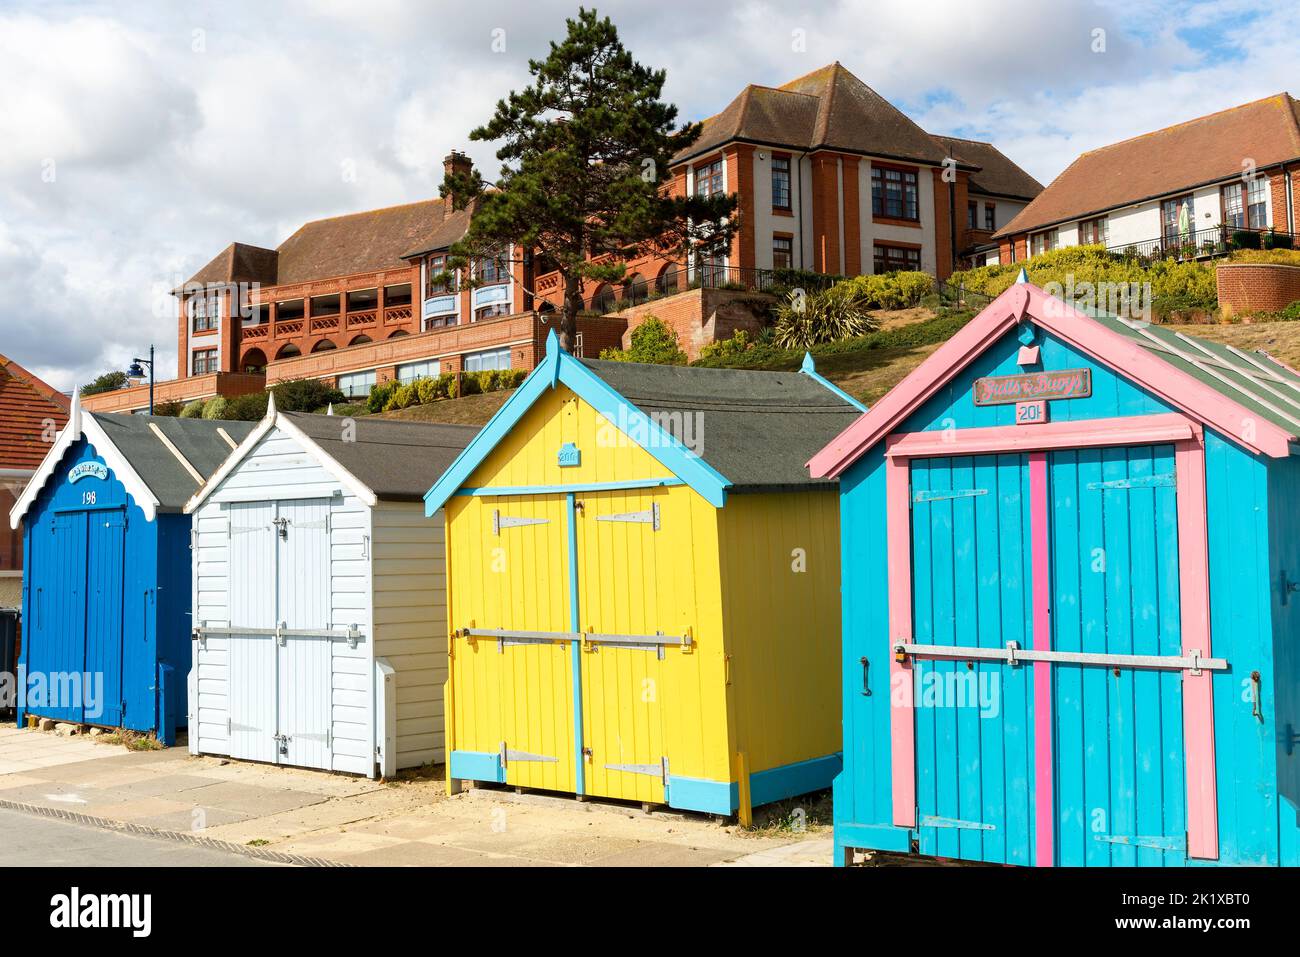 Huttes de plage colorées sur le front de mer, bâtiment de l'hôpital Barlet derrière, Felixstowe, Suffolk, Angleterre, Royaume-Uni Banque D'Images